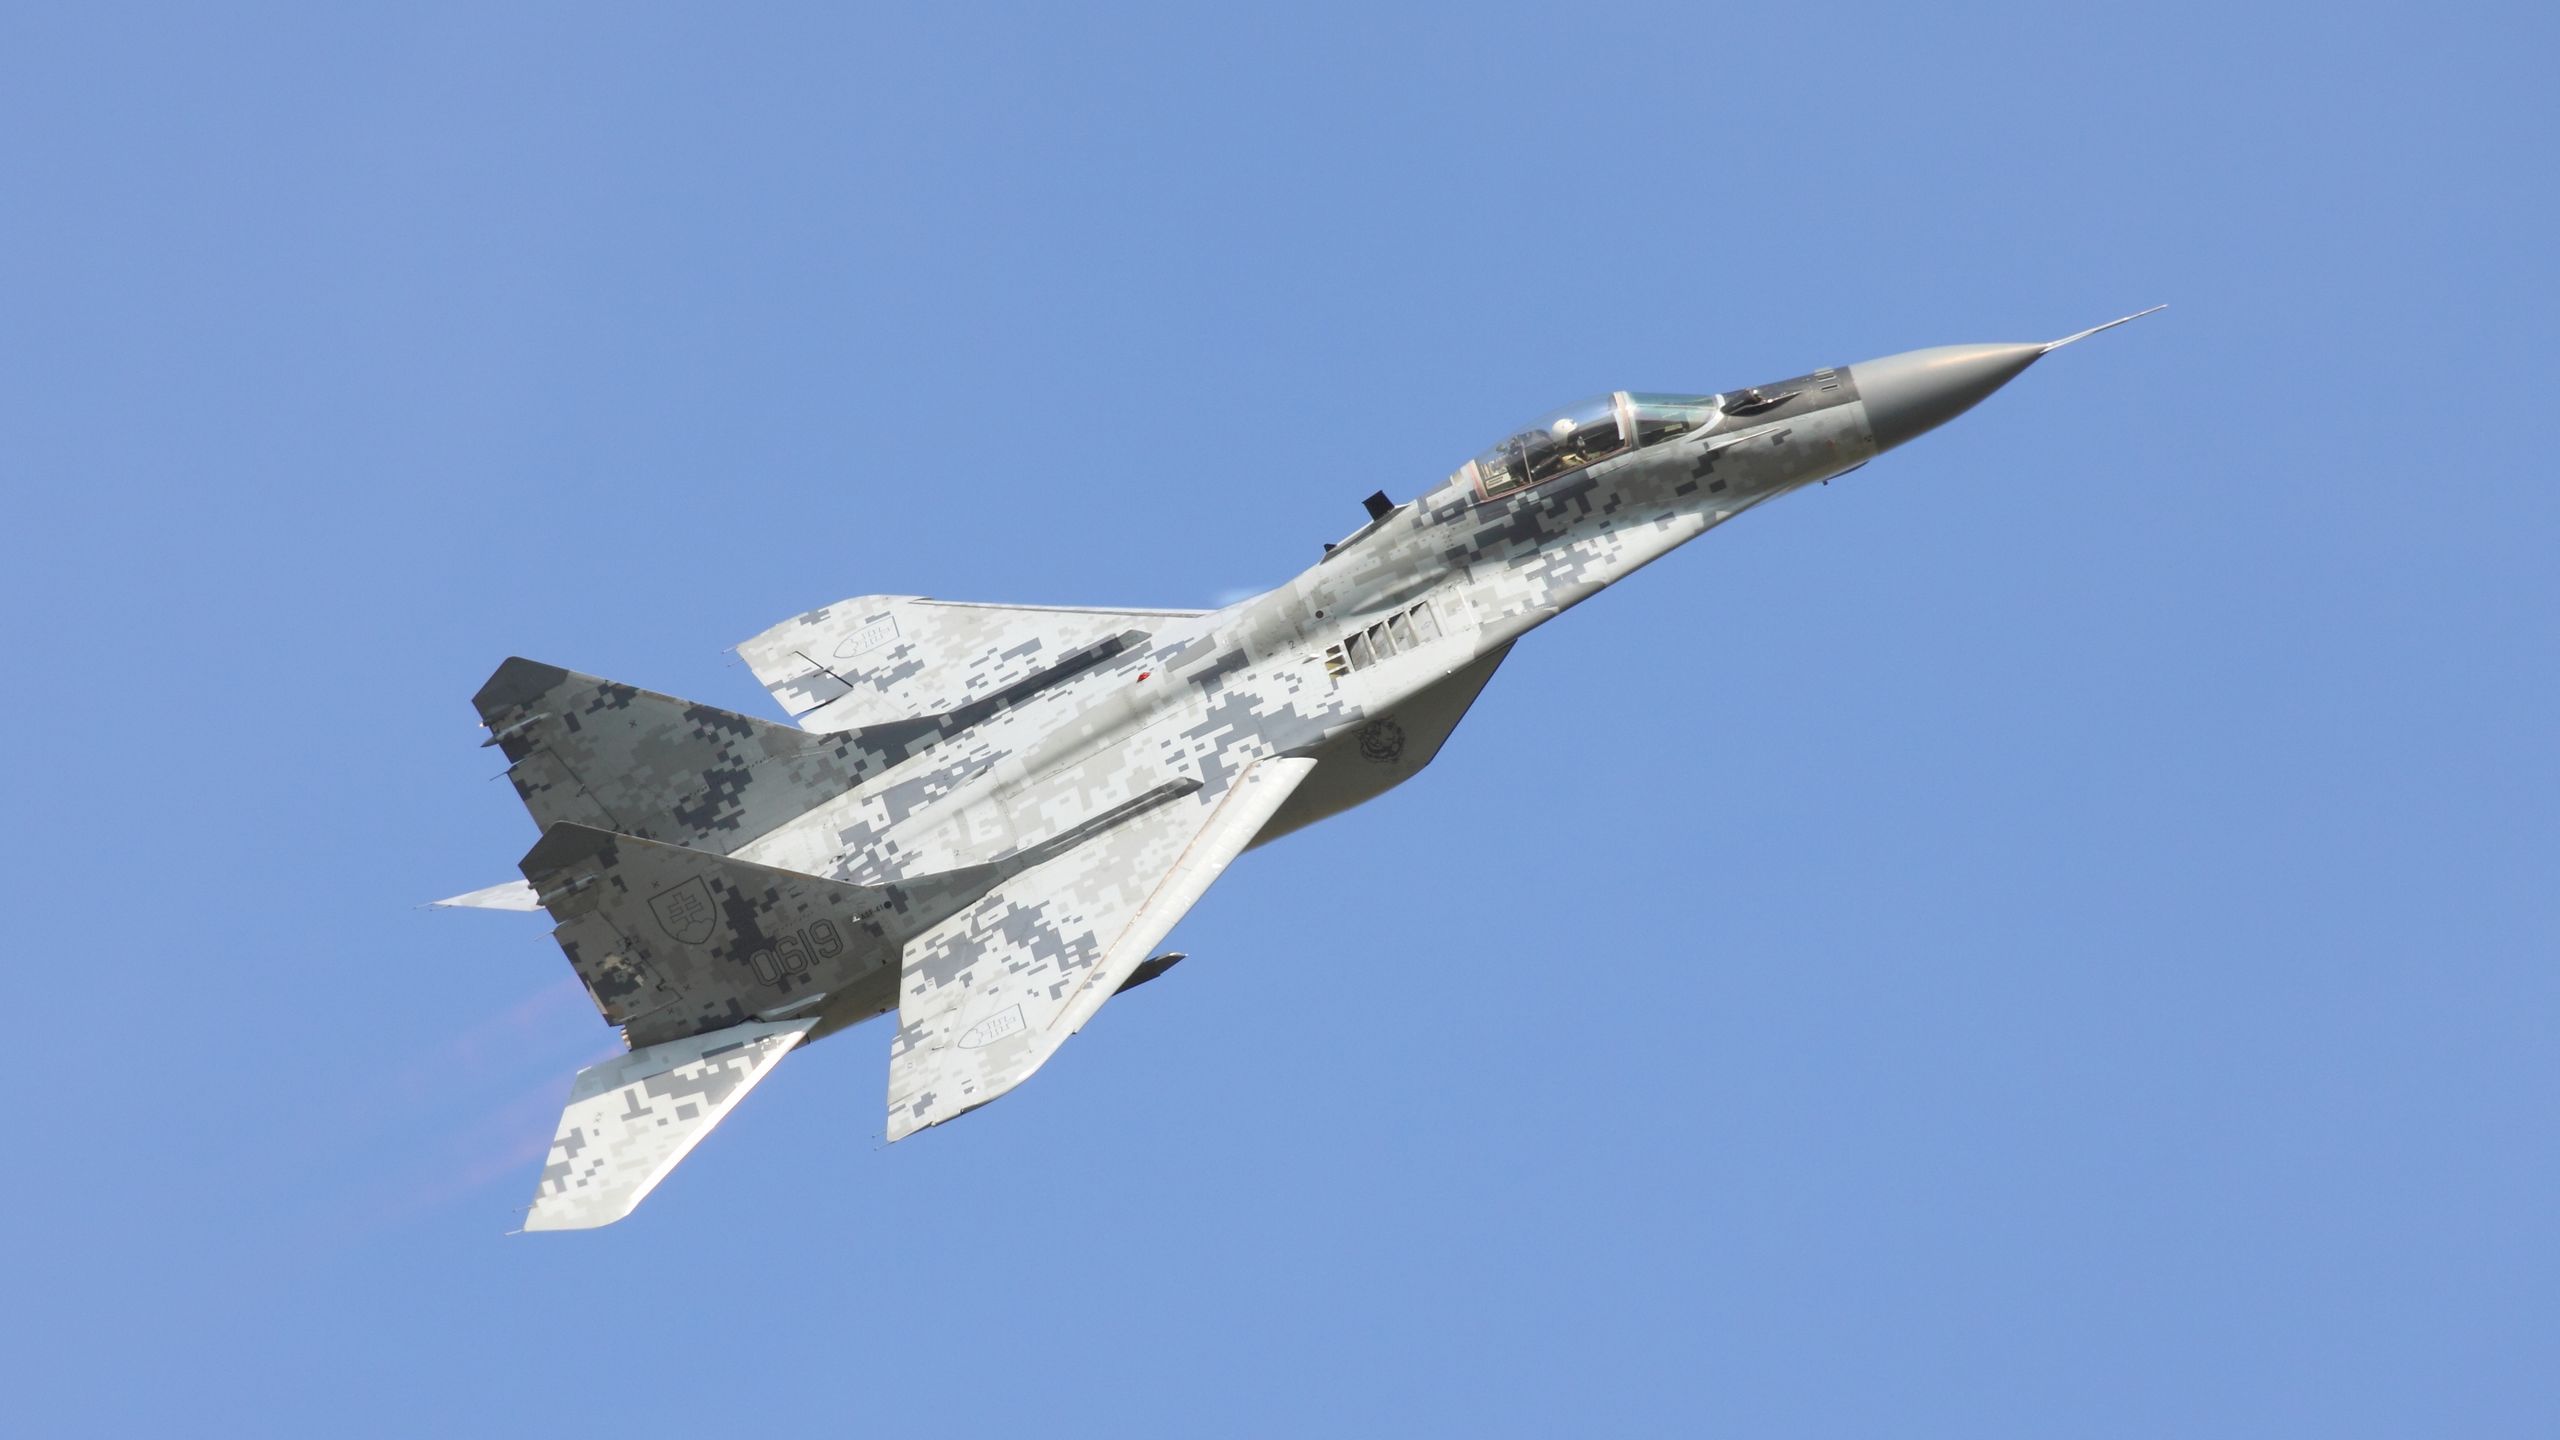 MiG-29 Fulcrum 2560x1440. Tapeta, pozadí na plochu PC. Obrázek ke stažení zdarma